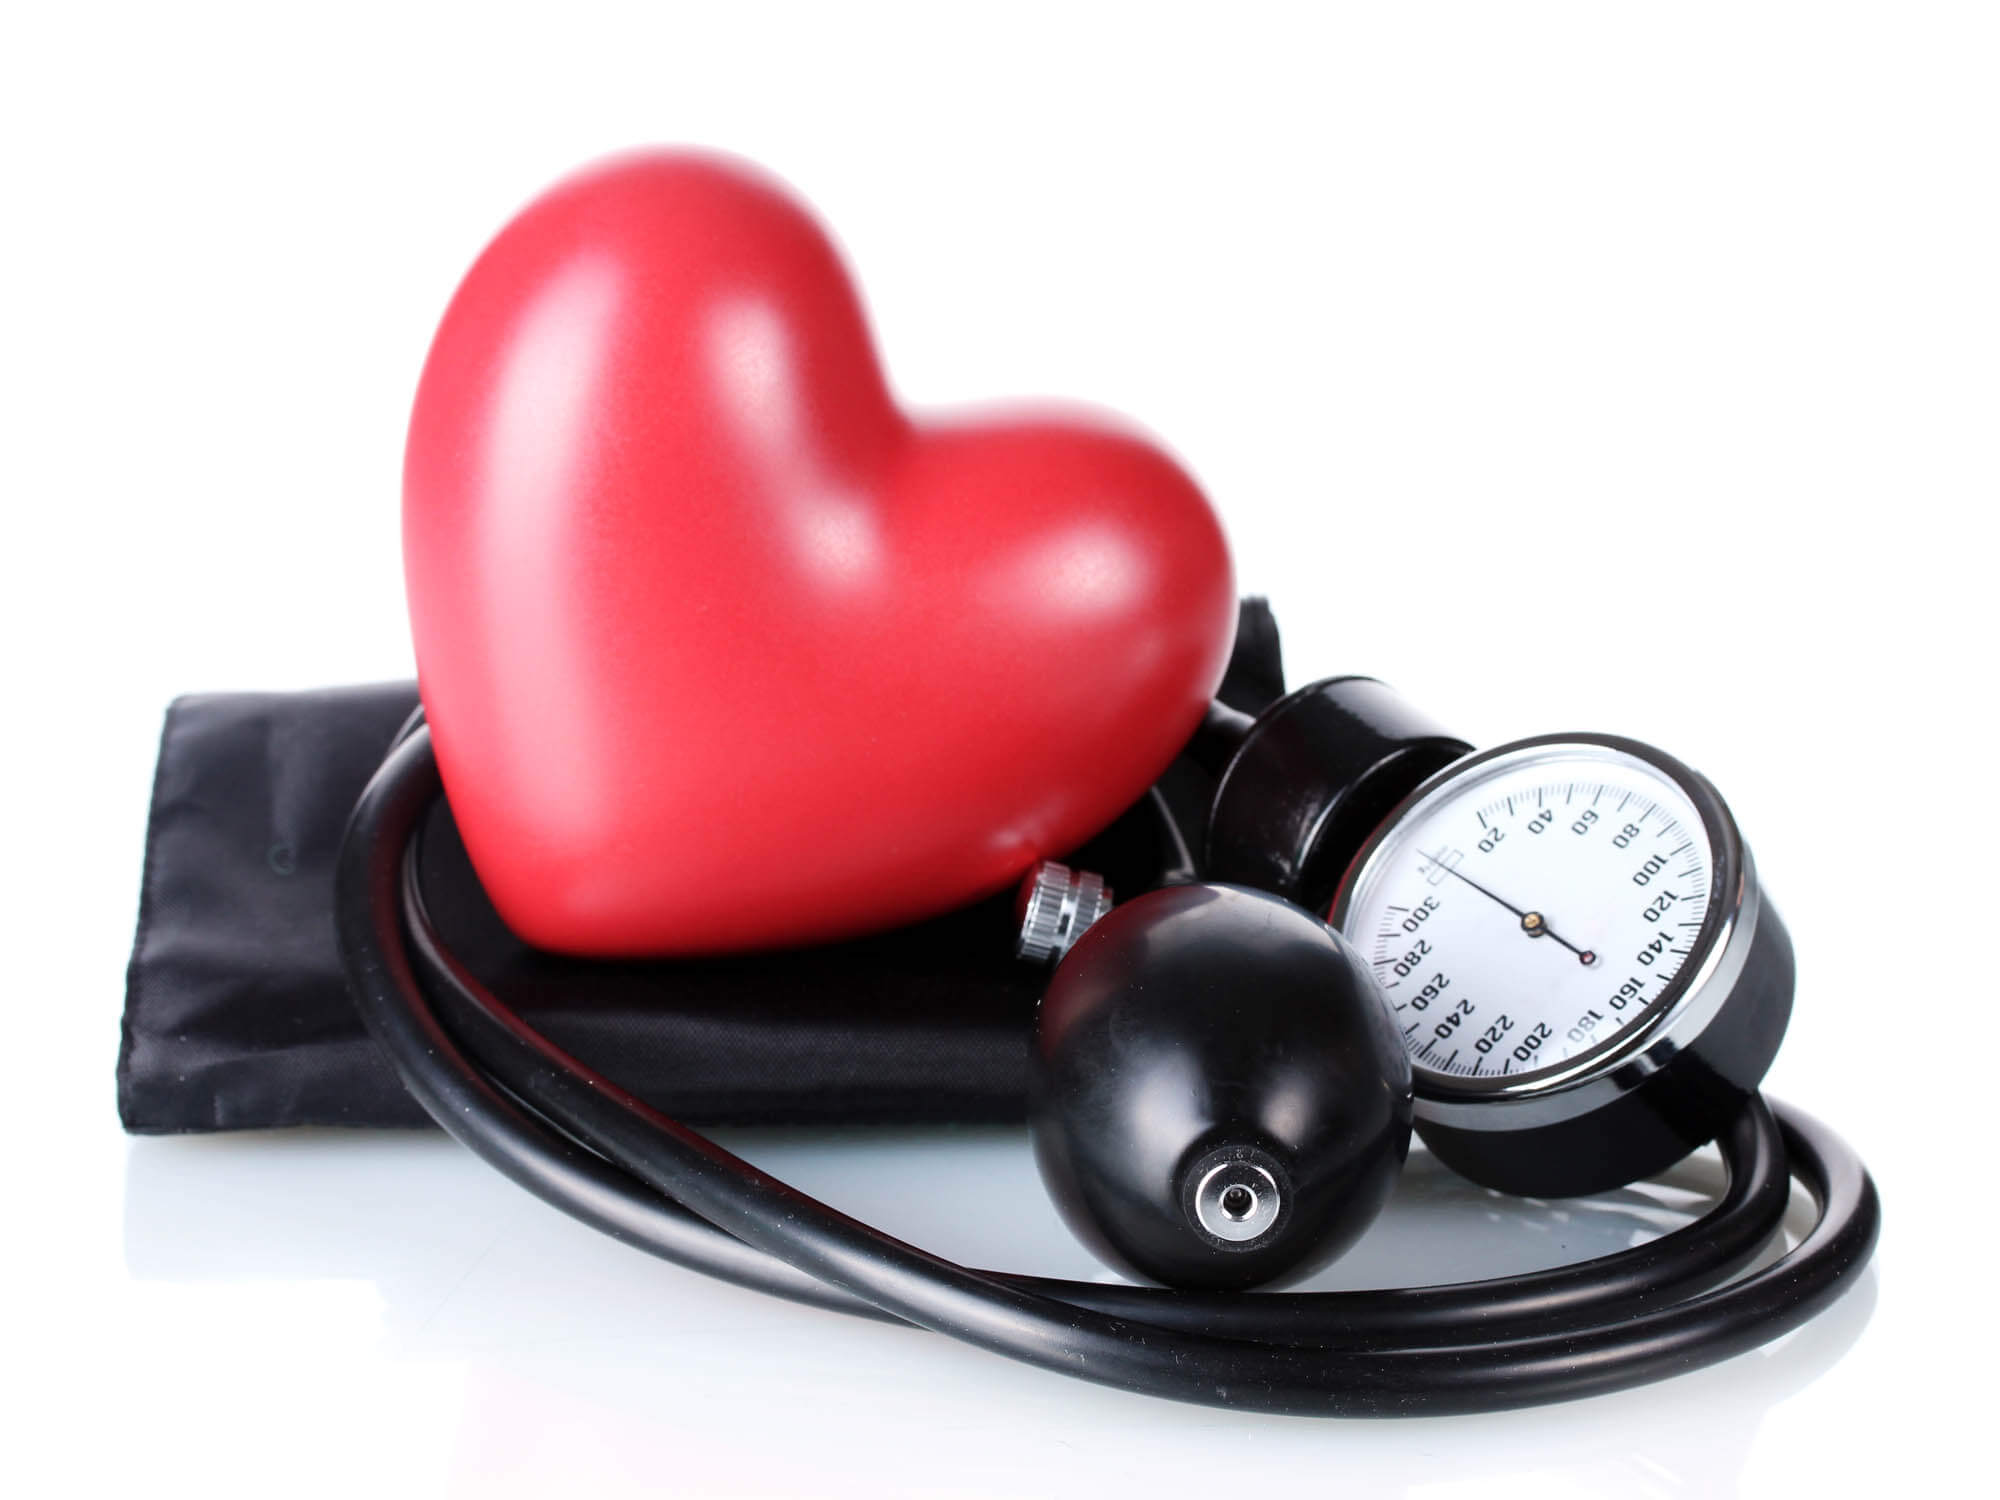 הקשר בין השמנה, לחץ דם גבוה וניתוח בריאטרי